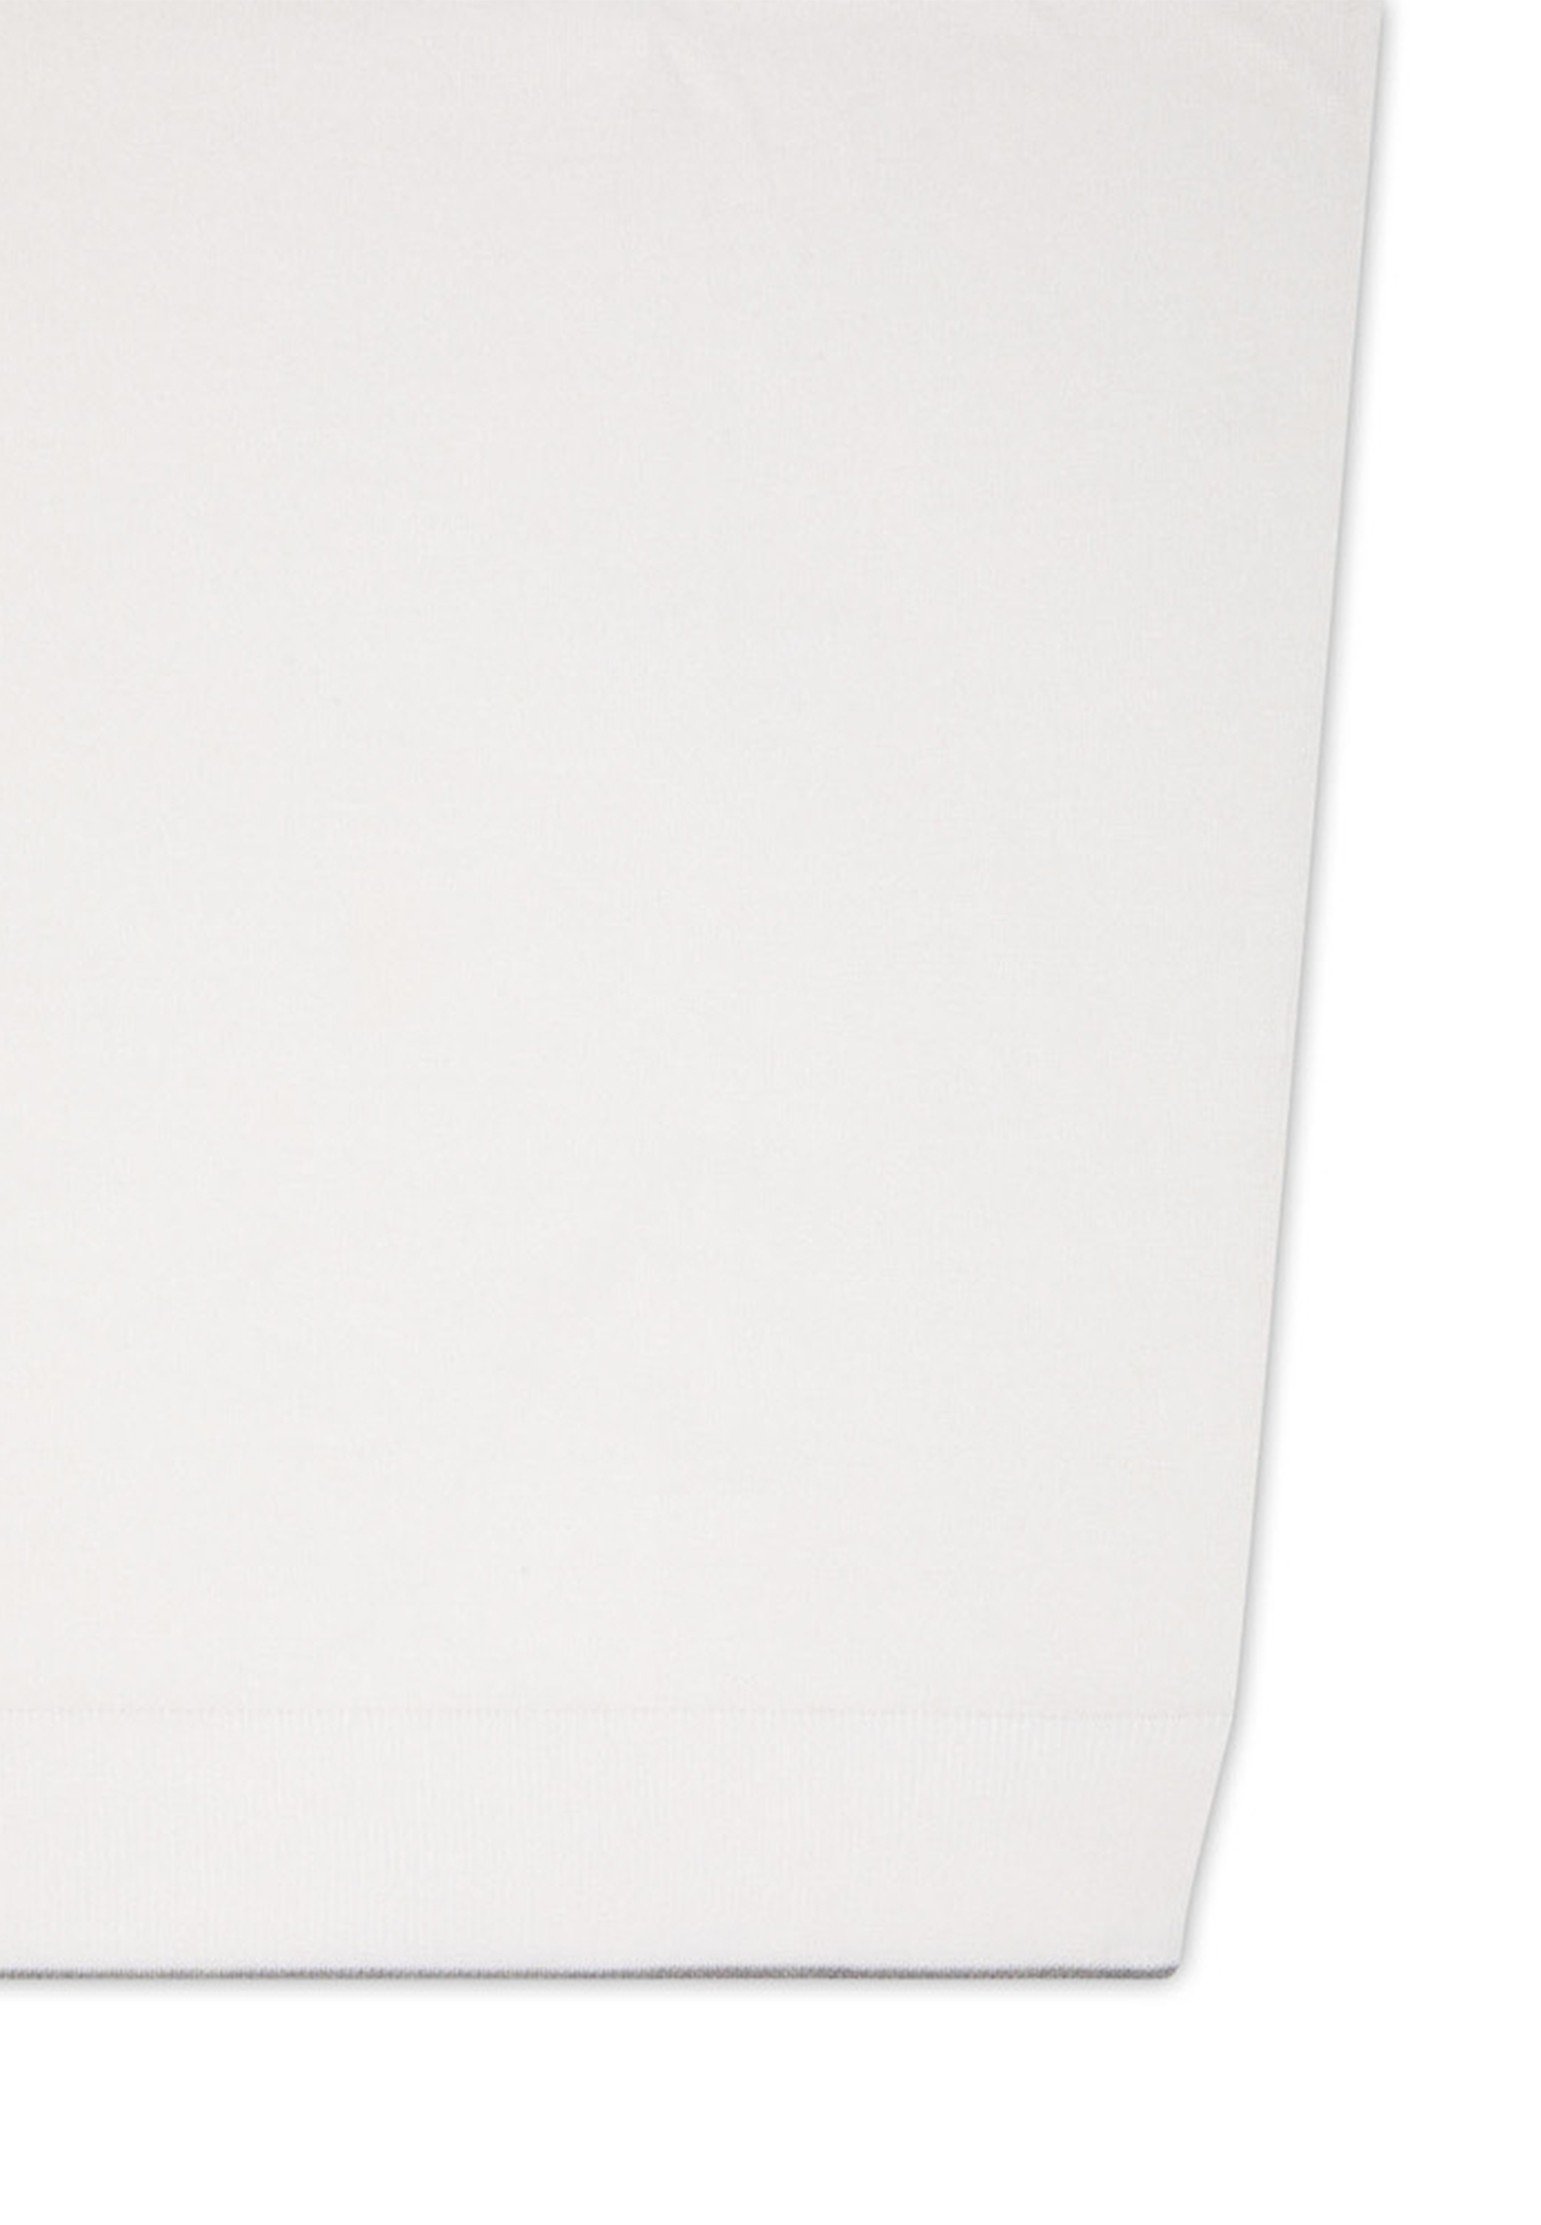 Polo STEFANO RICCI Color: white (Code: 329) in online store Allure